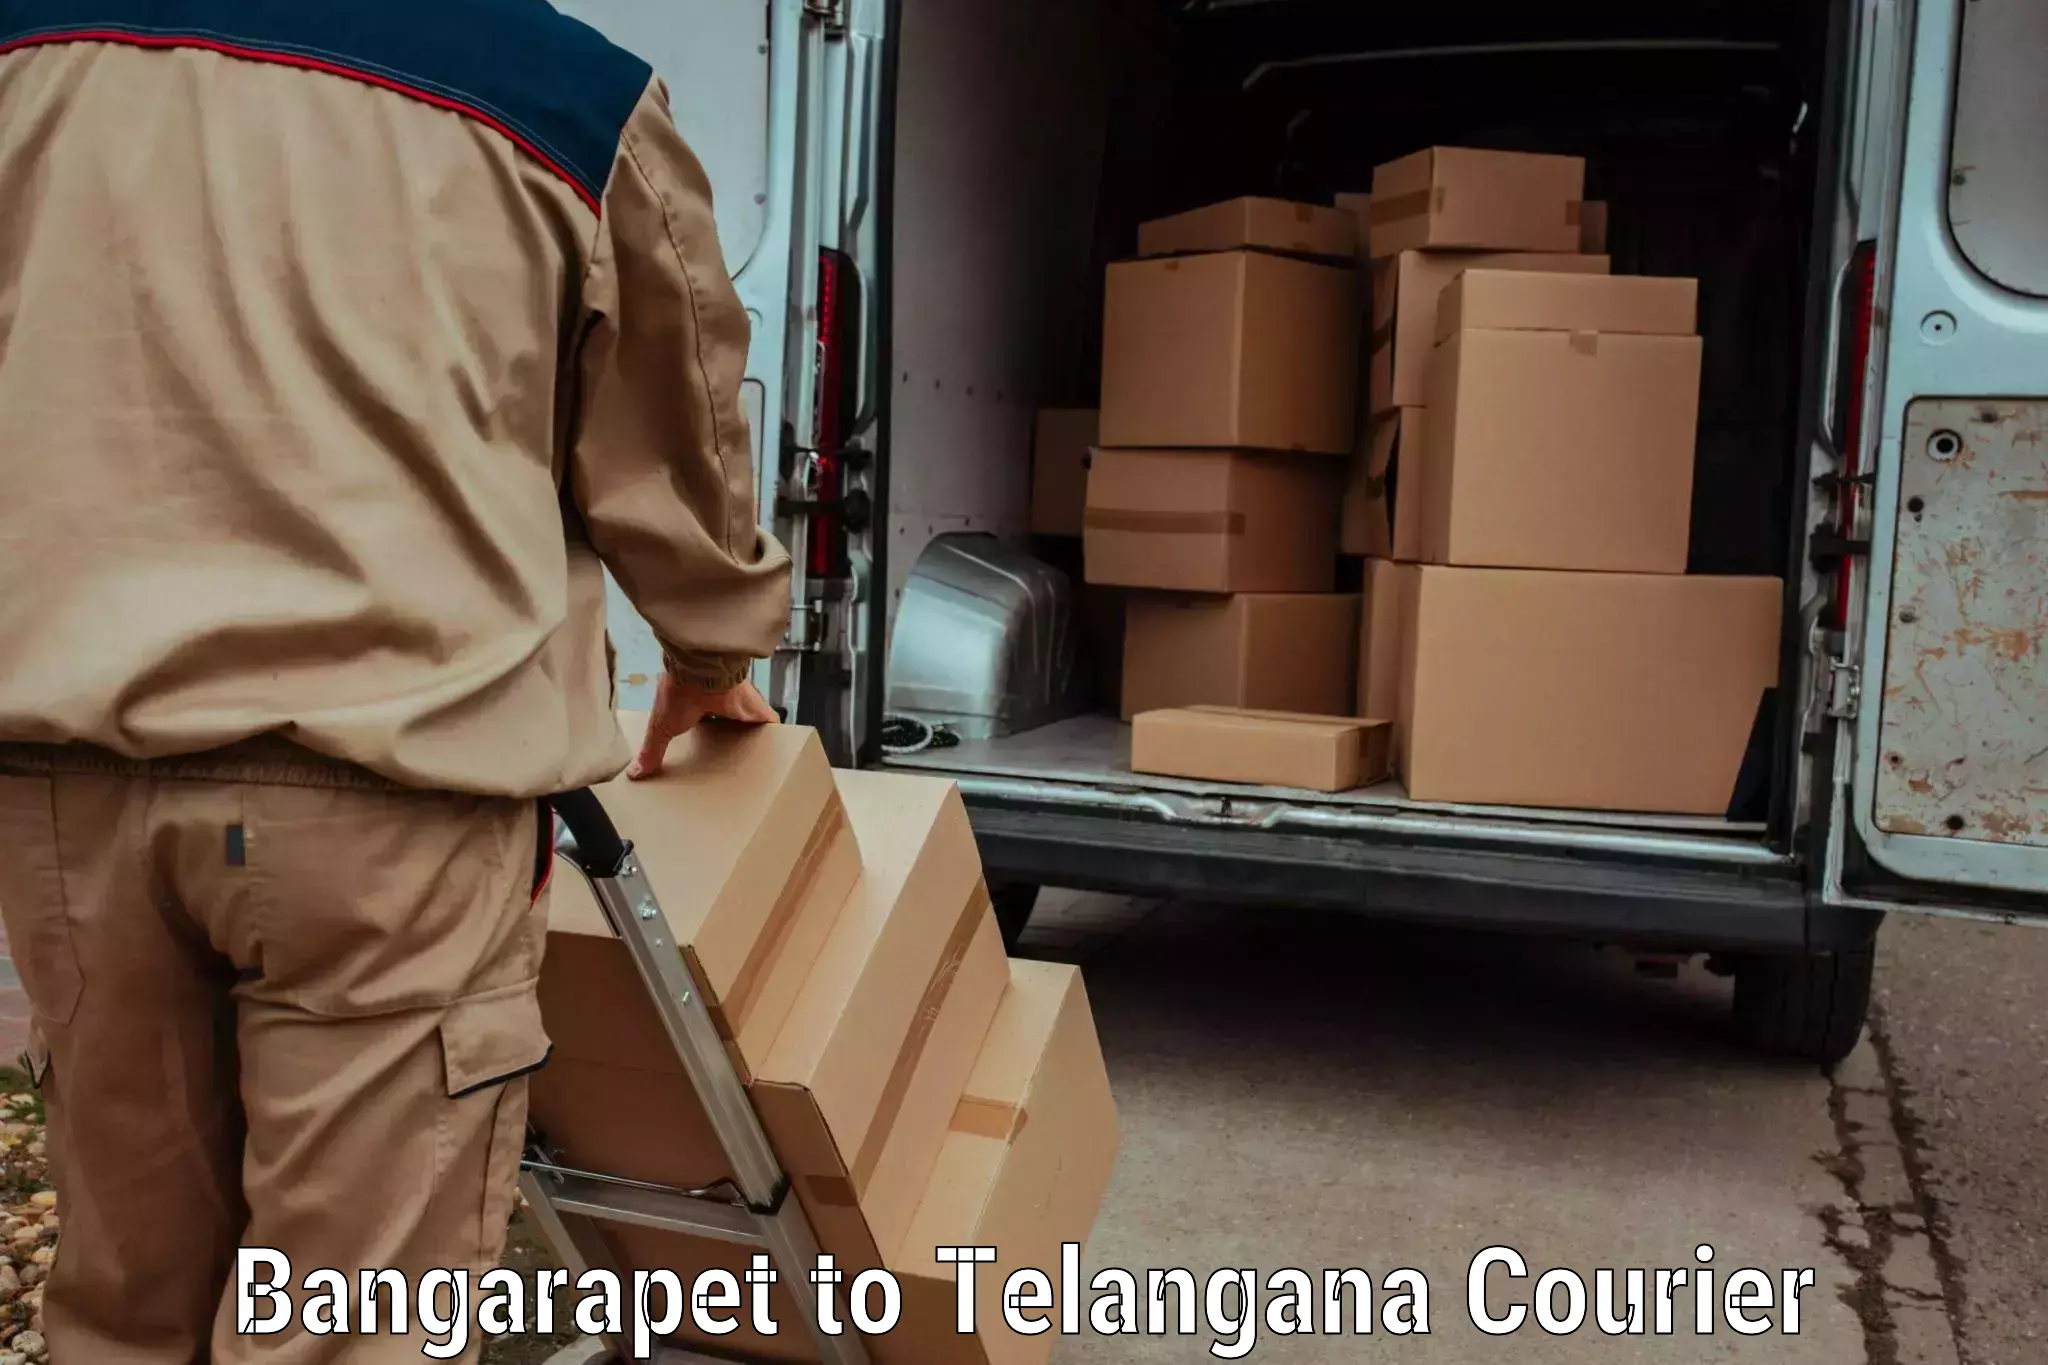 Luggage delivery network Bangarapet to Telangana